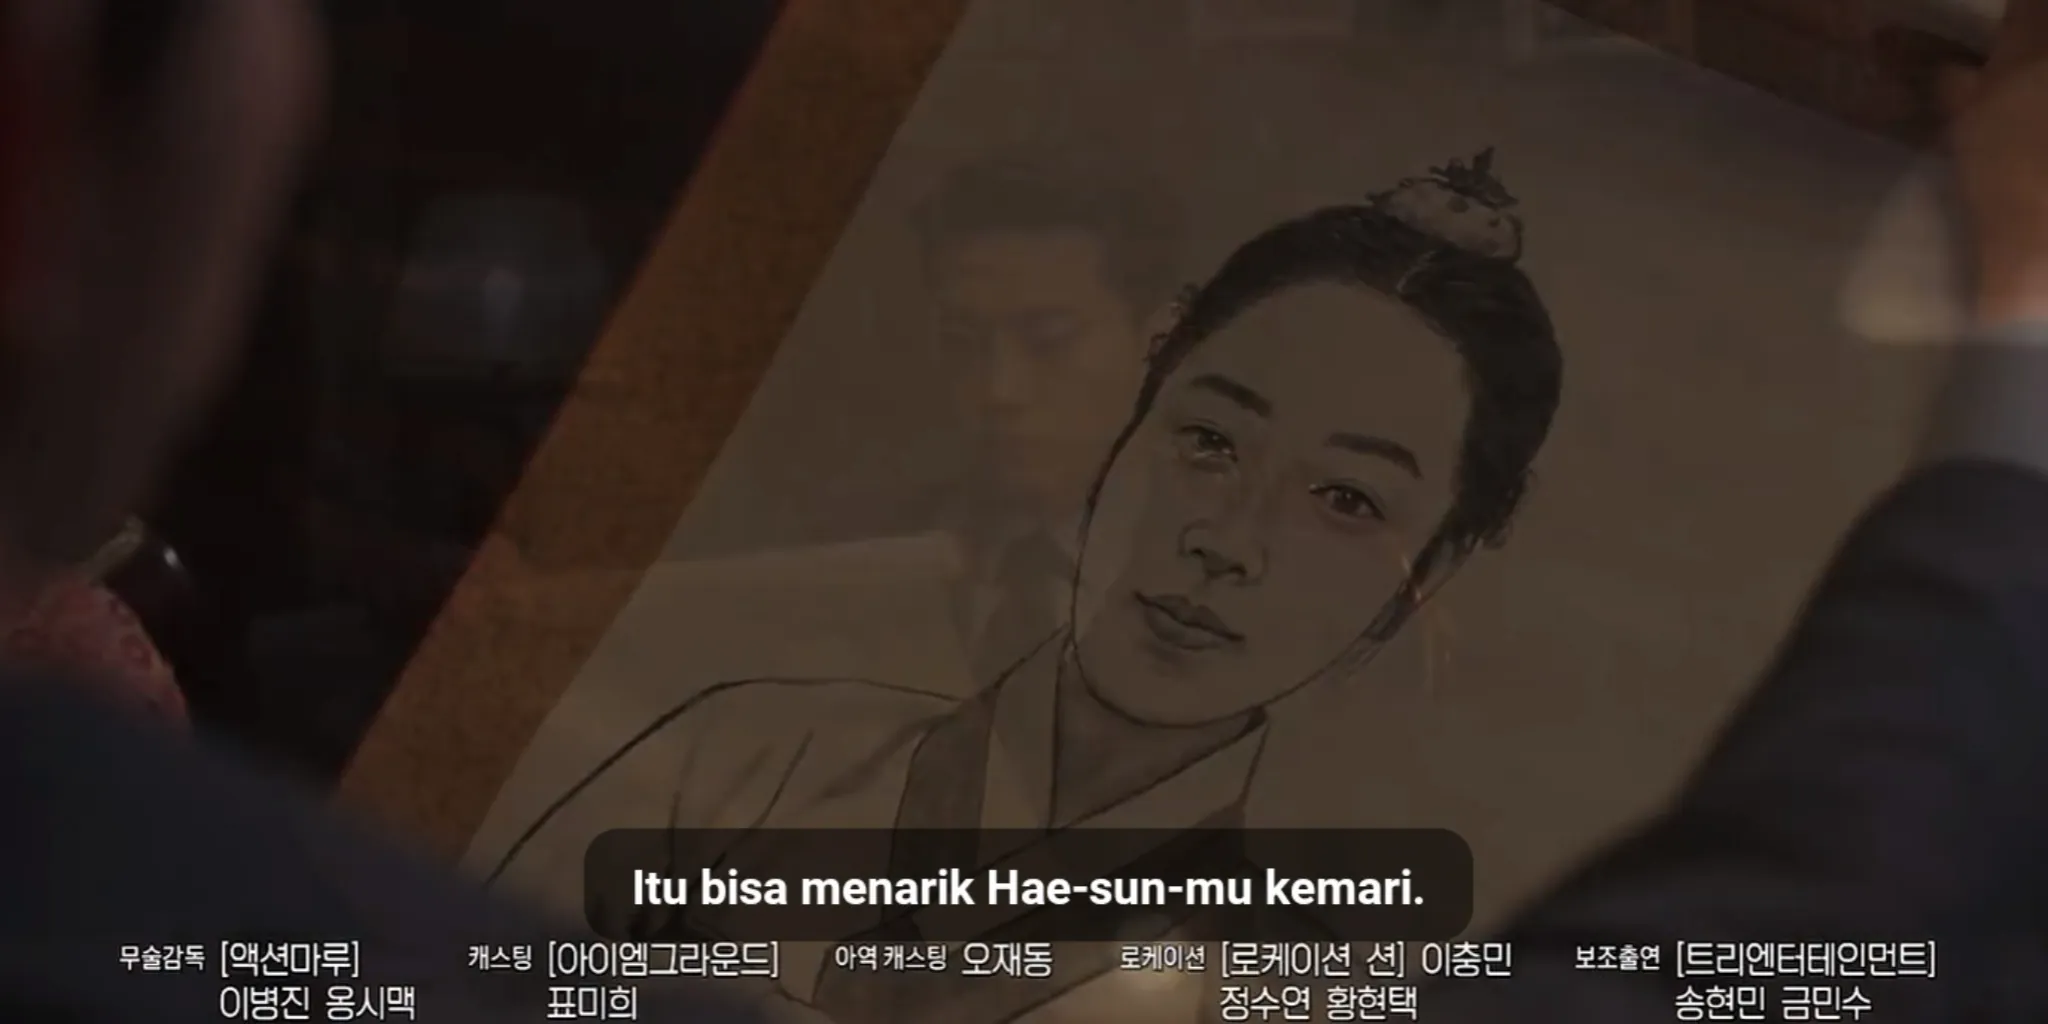 Sinopsis Heartbeat Episode 6 - Sebuah Ide Untuk Menarik Hae Seon Datang